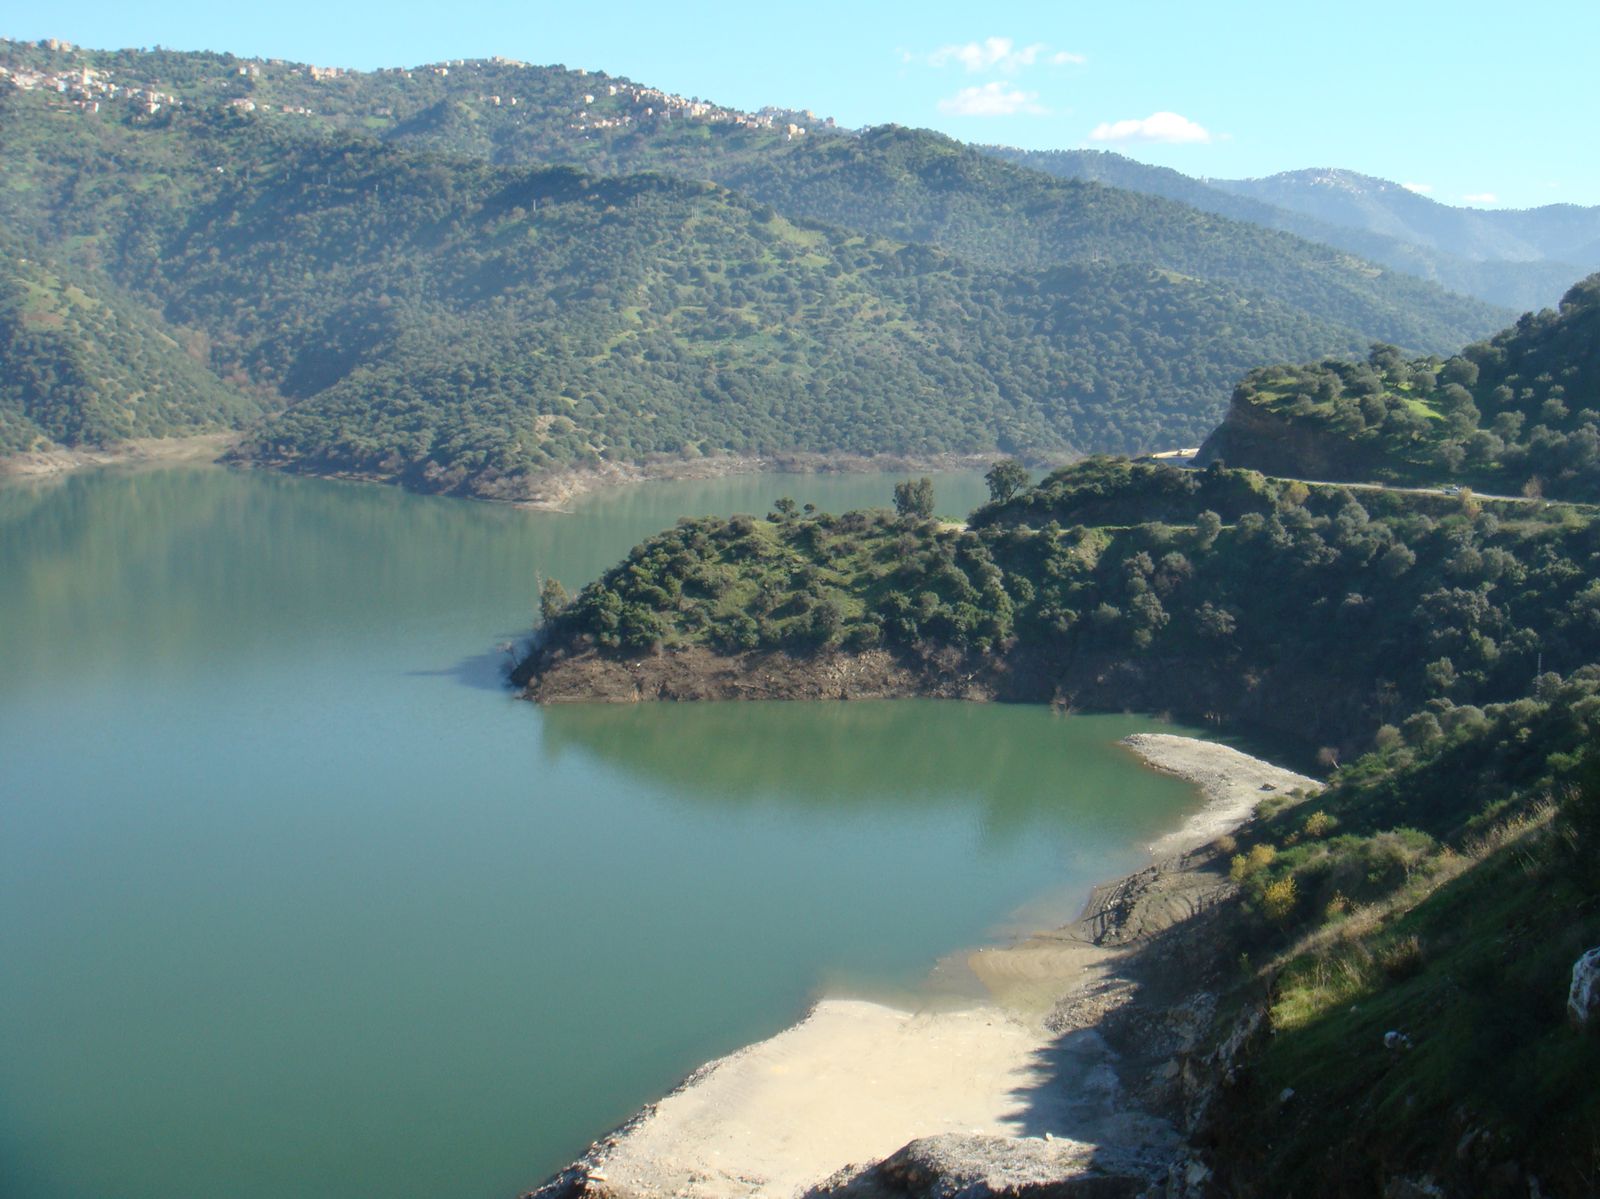 Le barrage de Taksebt se situe à 10 Km à l’Est de la ville de Tizi-Ouzou sur Oued Aissi, Il est alimenté par les eaux de pluie, de fonte du manteau nival du Djurdjura et des eaux usées du grand bassin collecteur. 